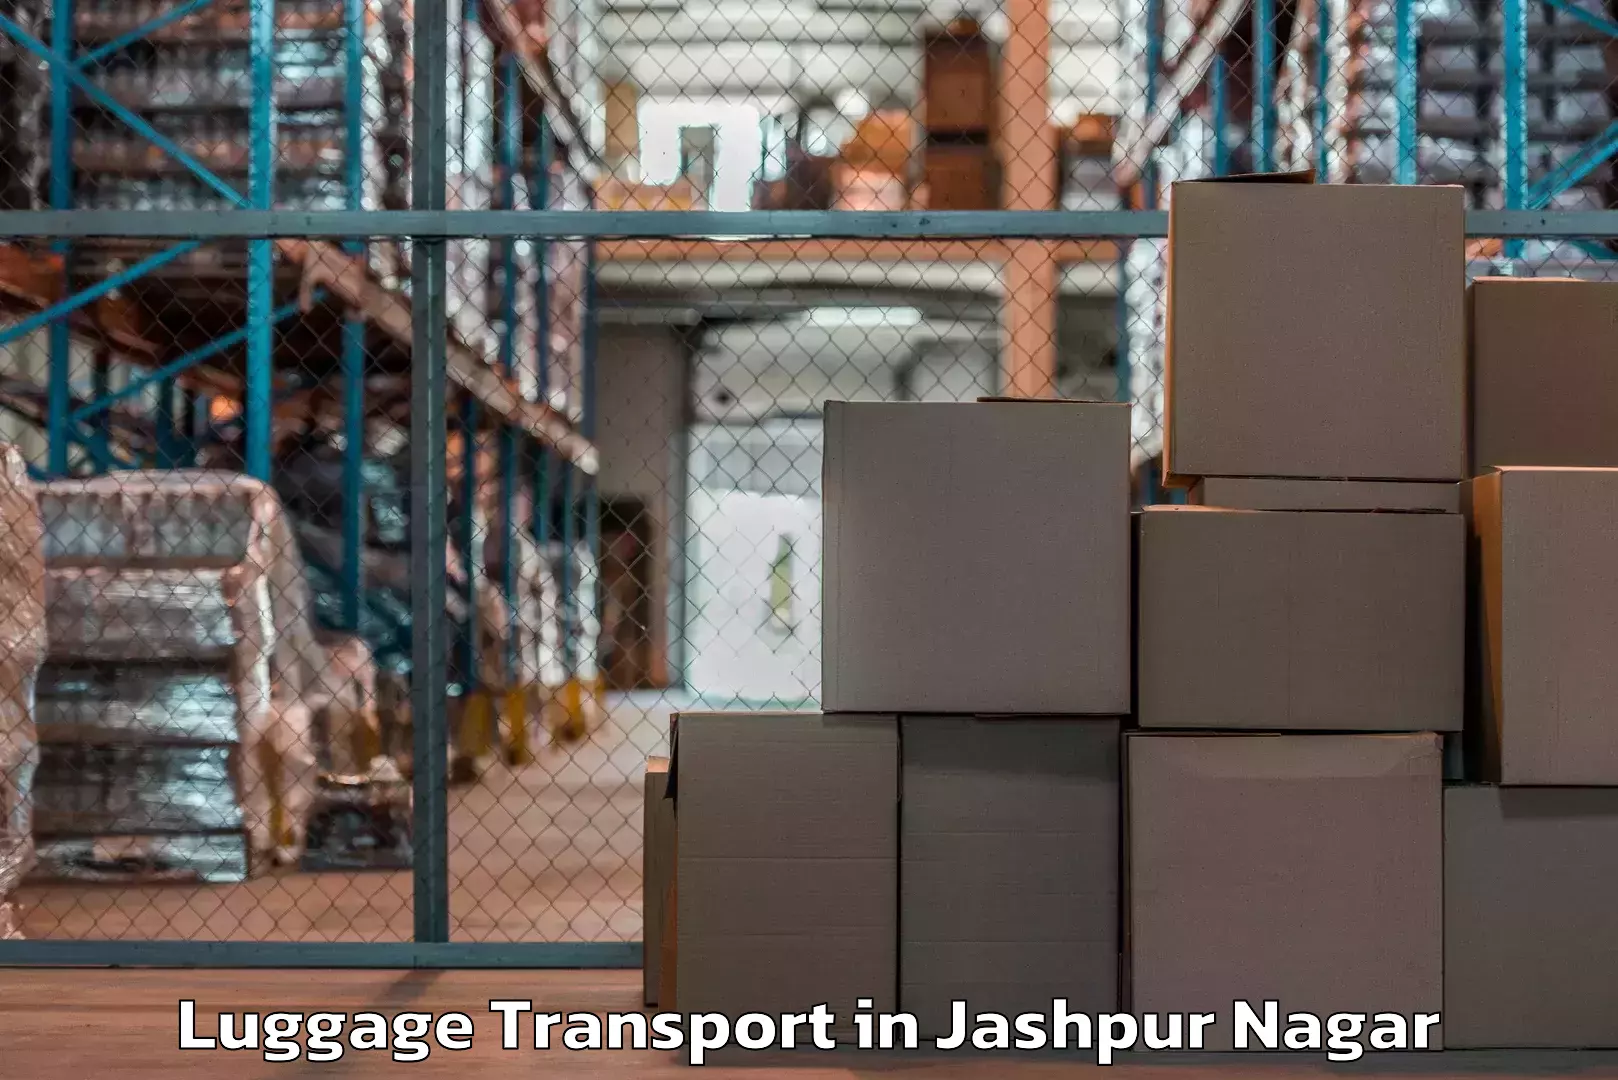 Baggage delivery management in Jashpur Nagar